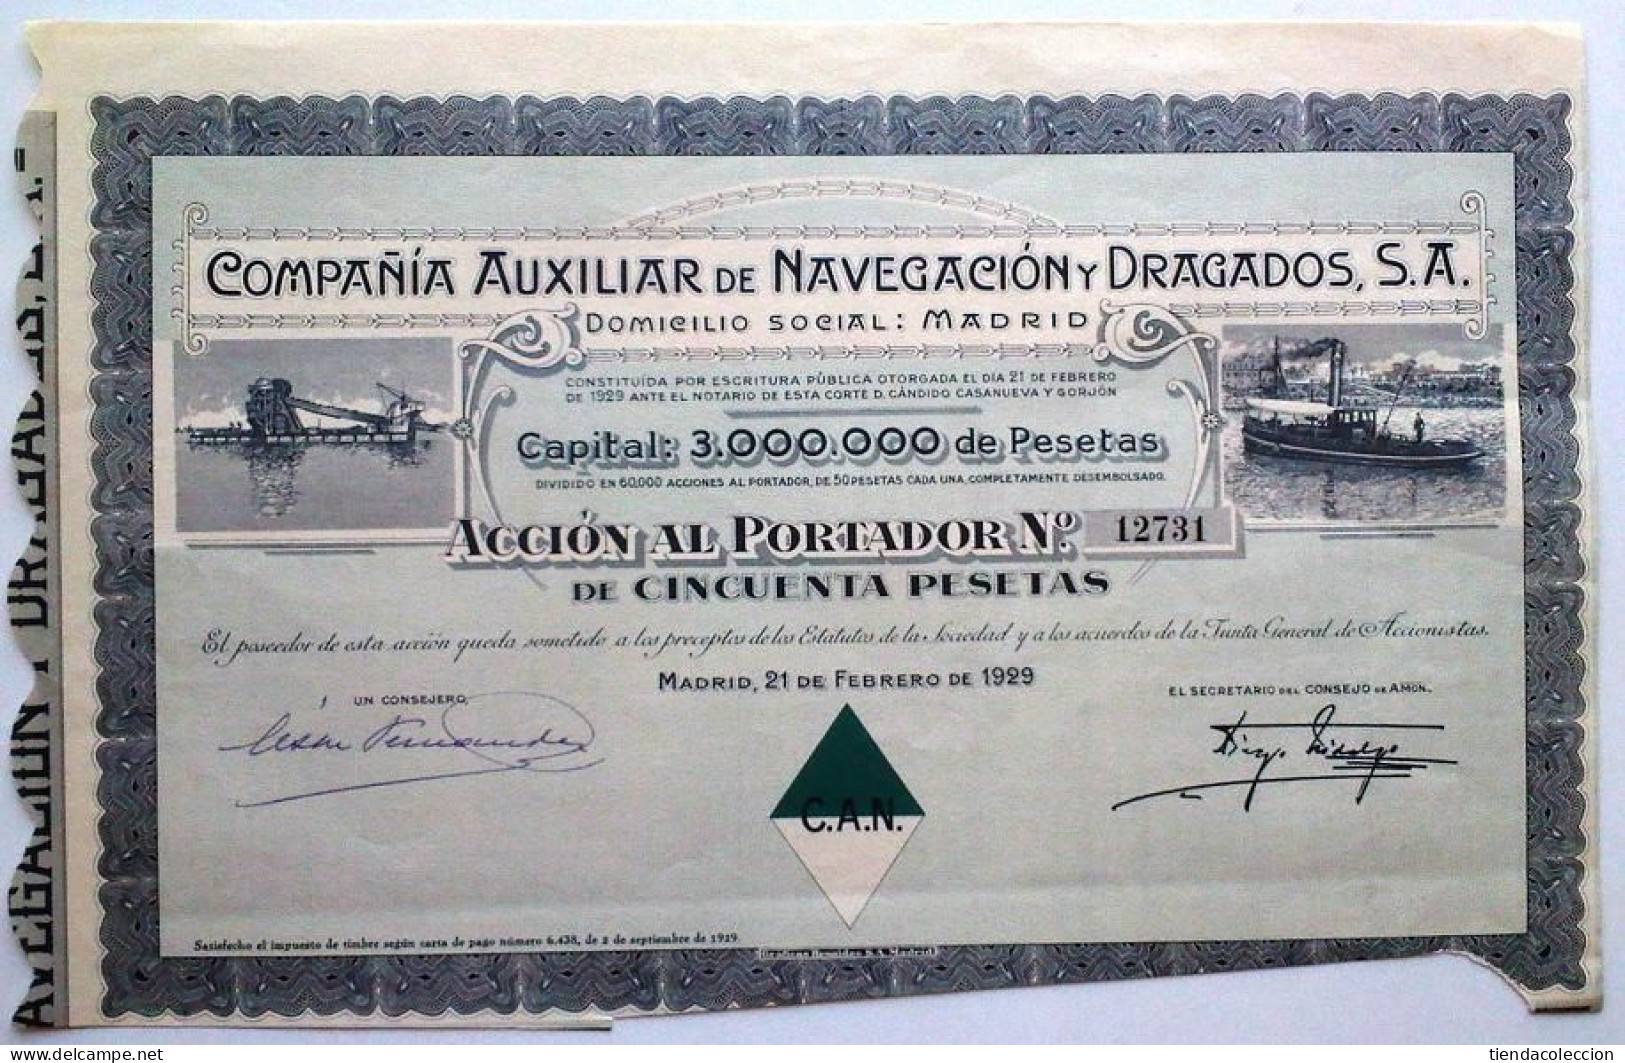 COMPAÑÍA AUXILIAR DE NAVEGACIÓN Y DRAGADOS, S. A. - Navigation